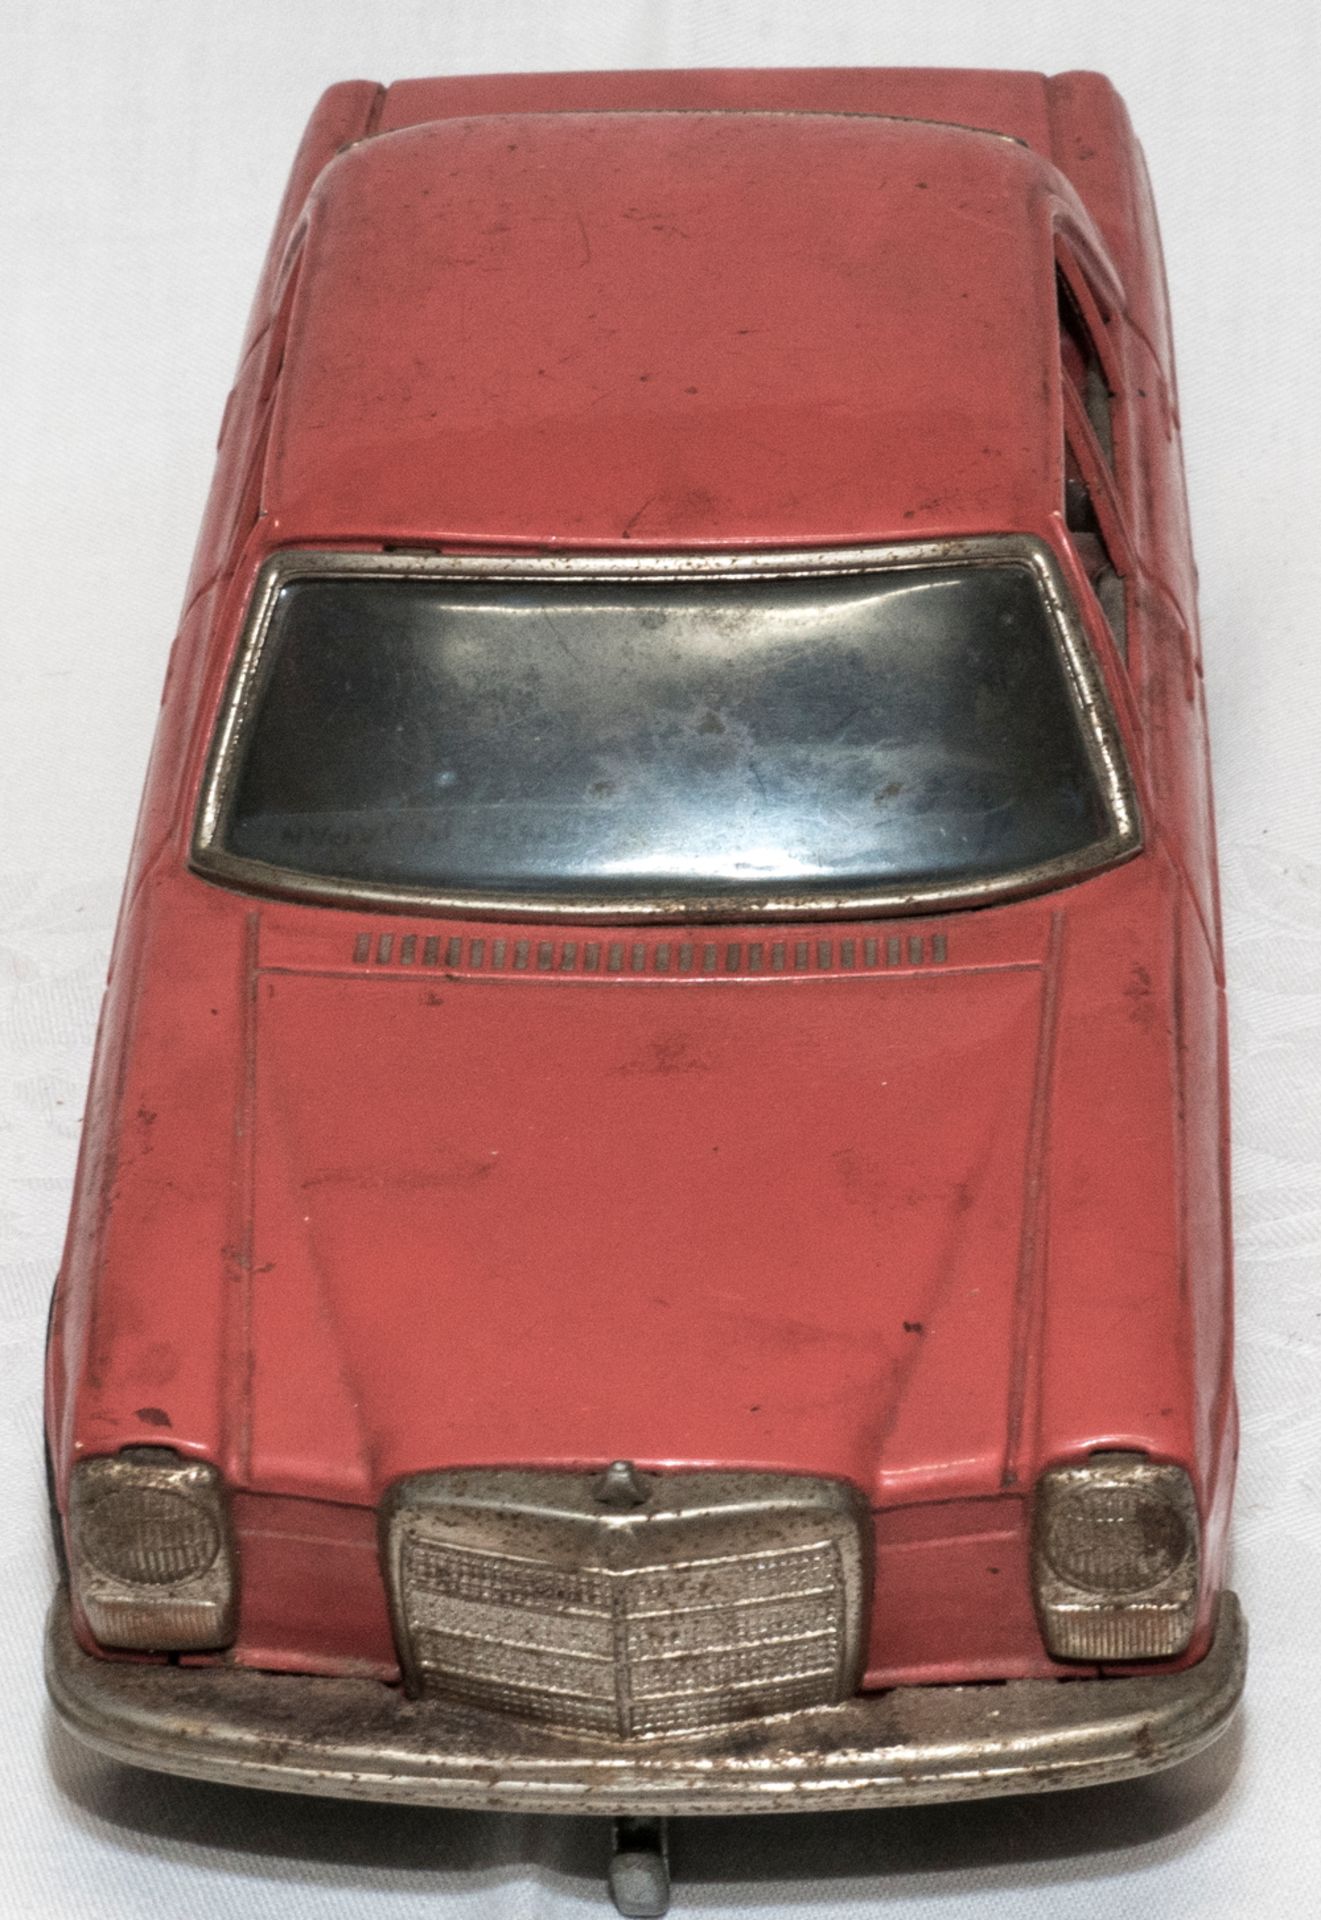 Taiyo Made in Japan, Blechspielzeug, Mercedes Benz. Ca. 70er Jahre. Batteriebetrieben. Länge ca. - Bild 2 aus 6